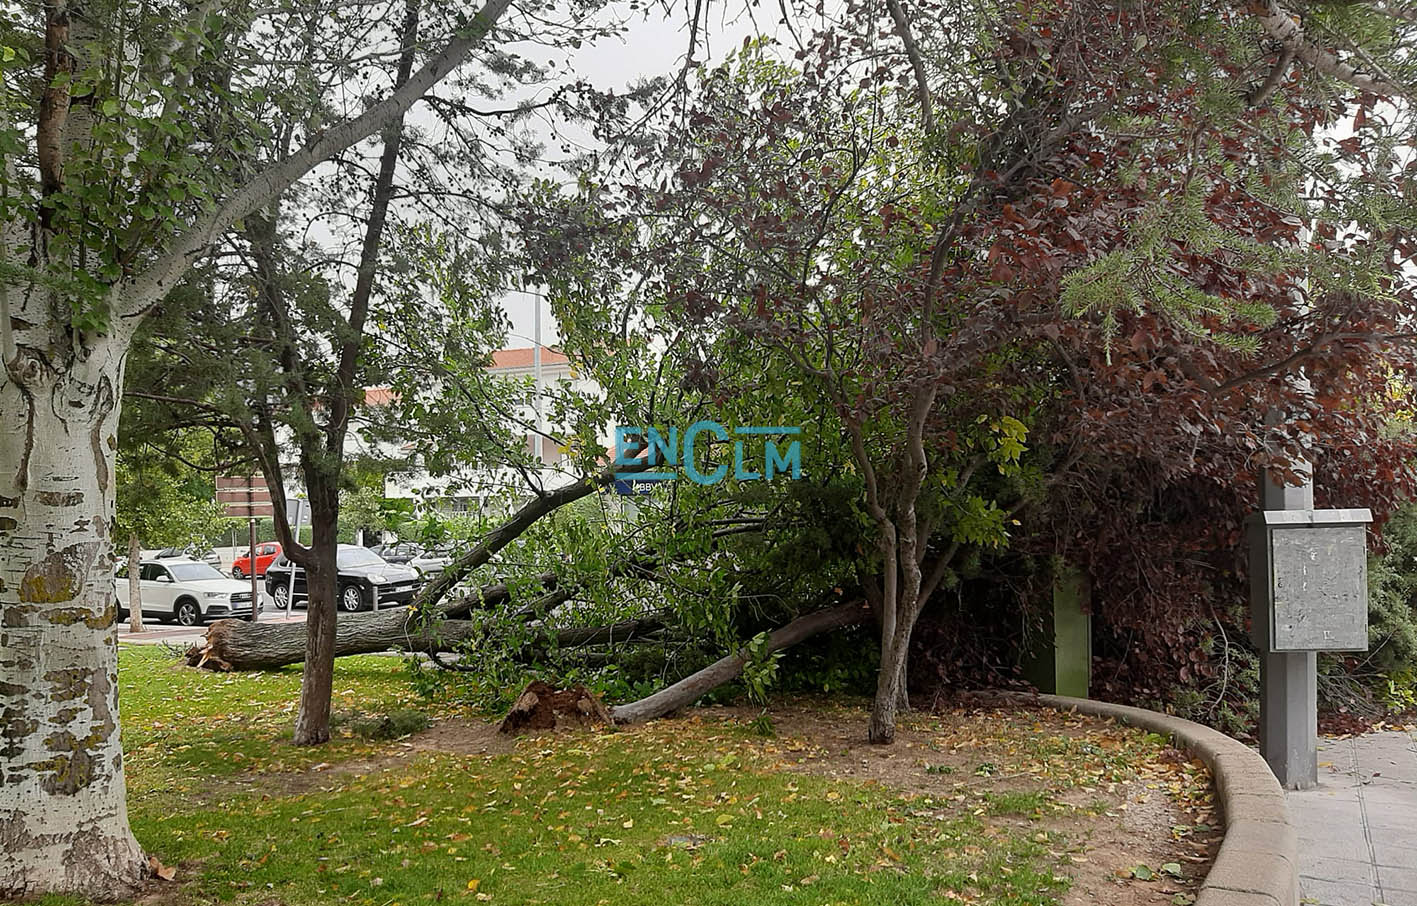 Estos dos árboles se han caído en el barrio del Polígono, en el parque situado frente al centro de salud.